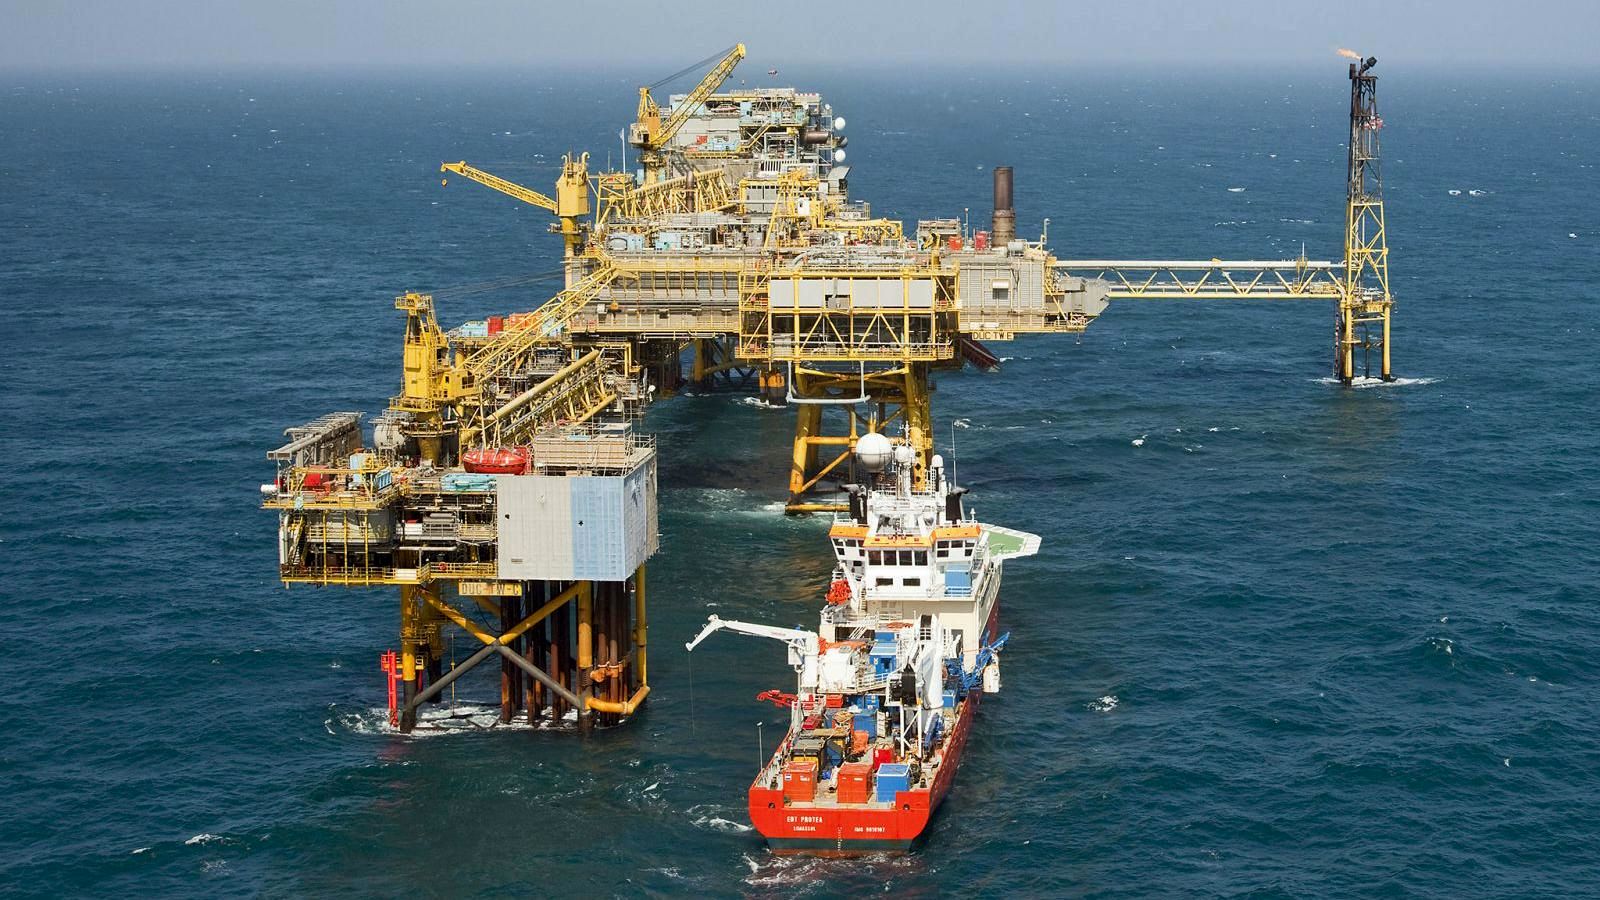 مسئولیت استاندارد تجهیزات صنعت نفت به عهده وزارت نفت است/اجرای 25 درصد قراردادهای صنعت نفت